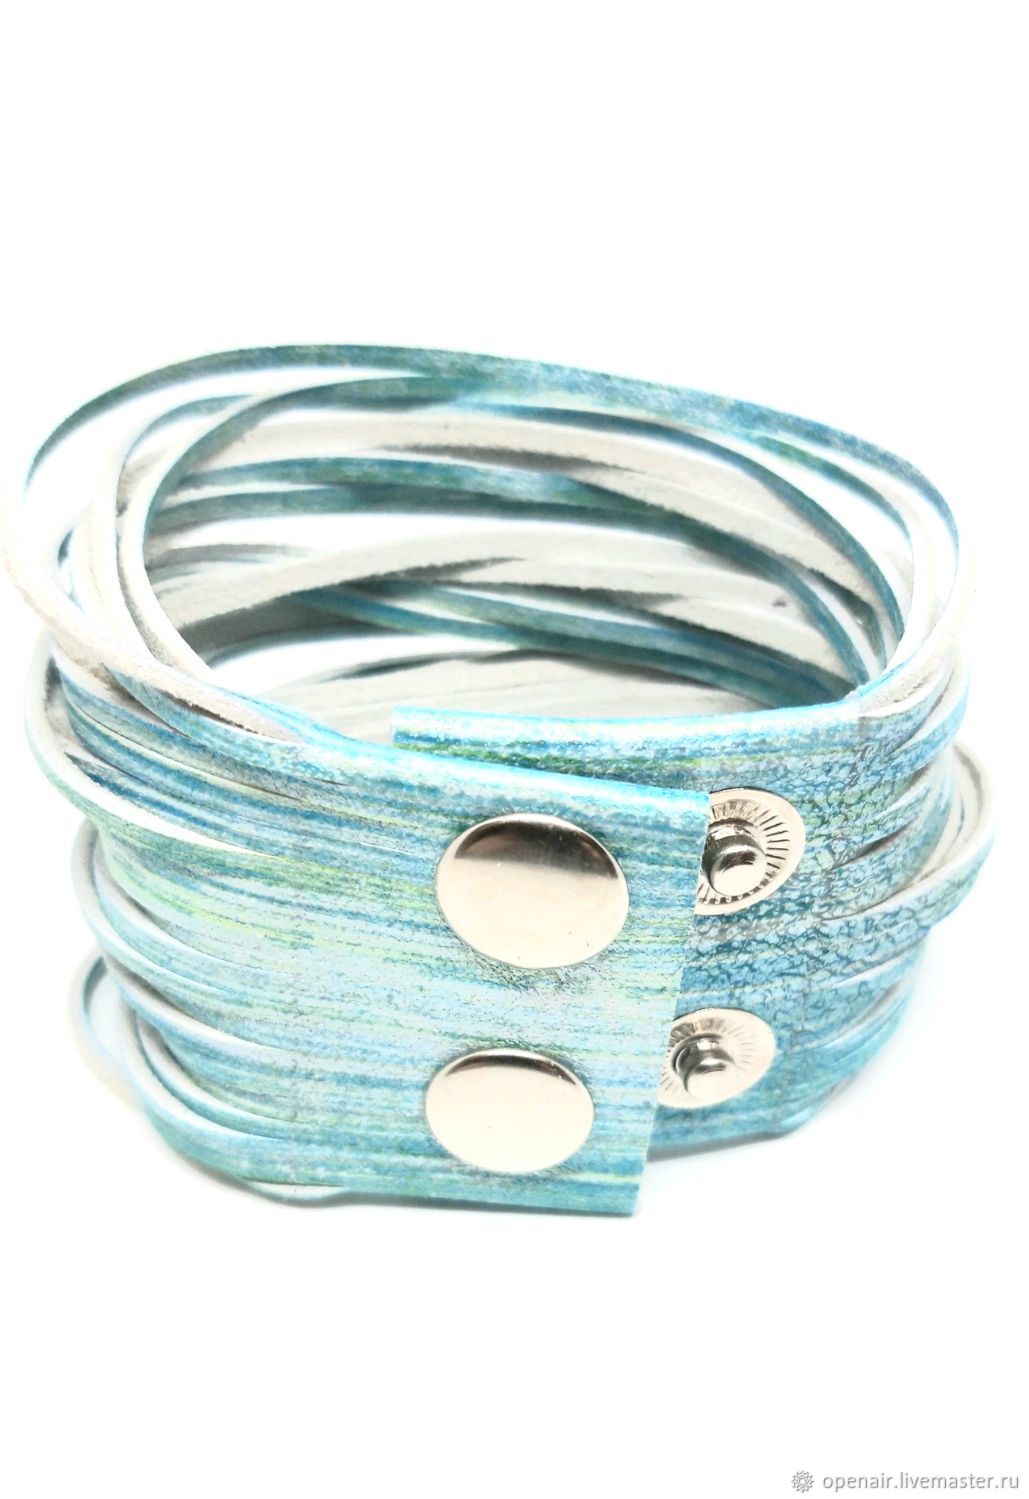 Women's leather bracelet. Strings. blue. WIDE, Cuff bracelet, St. Petersburg,  Фото №1